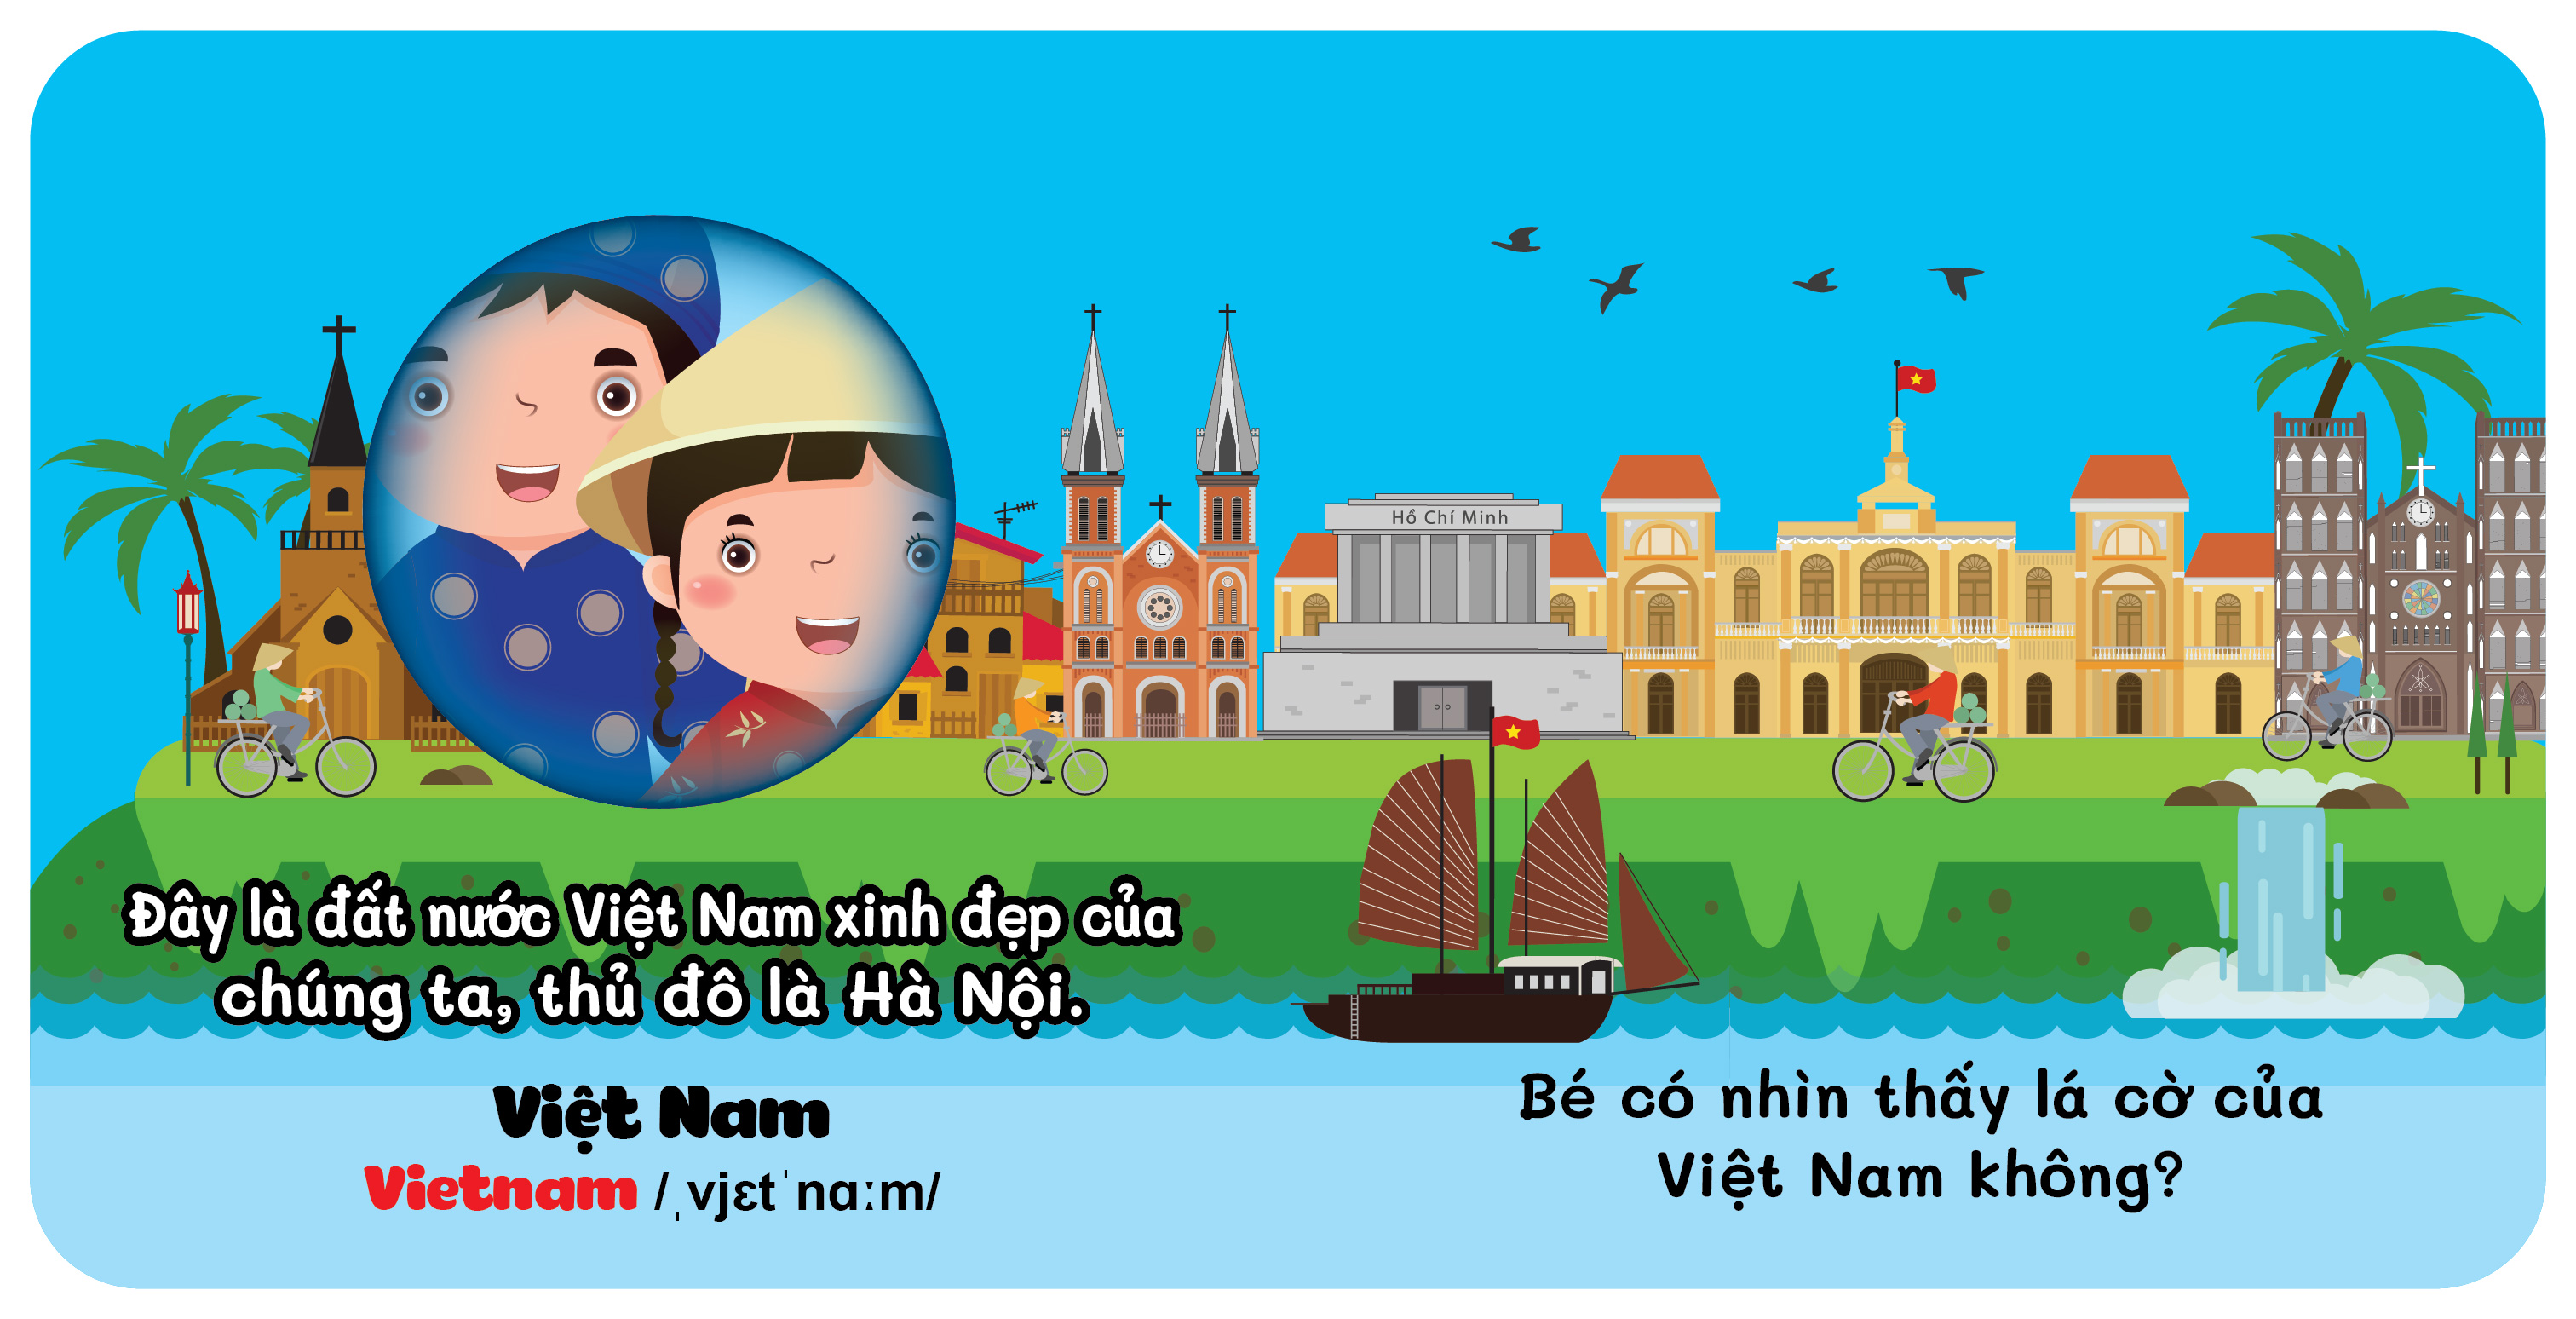 Sách - Đố Bé Ở Sau Là Gì - Song Ngữ Anh Việt - Trang Phục - National costume (các trang đều là Bìa Cứng chống nước)